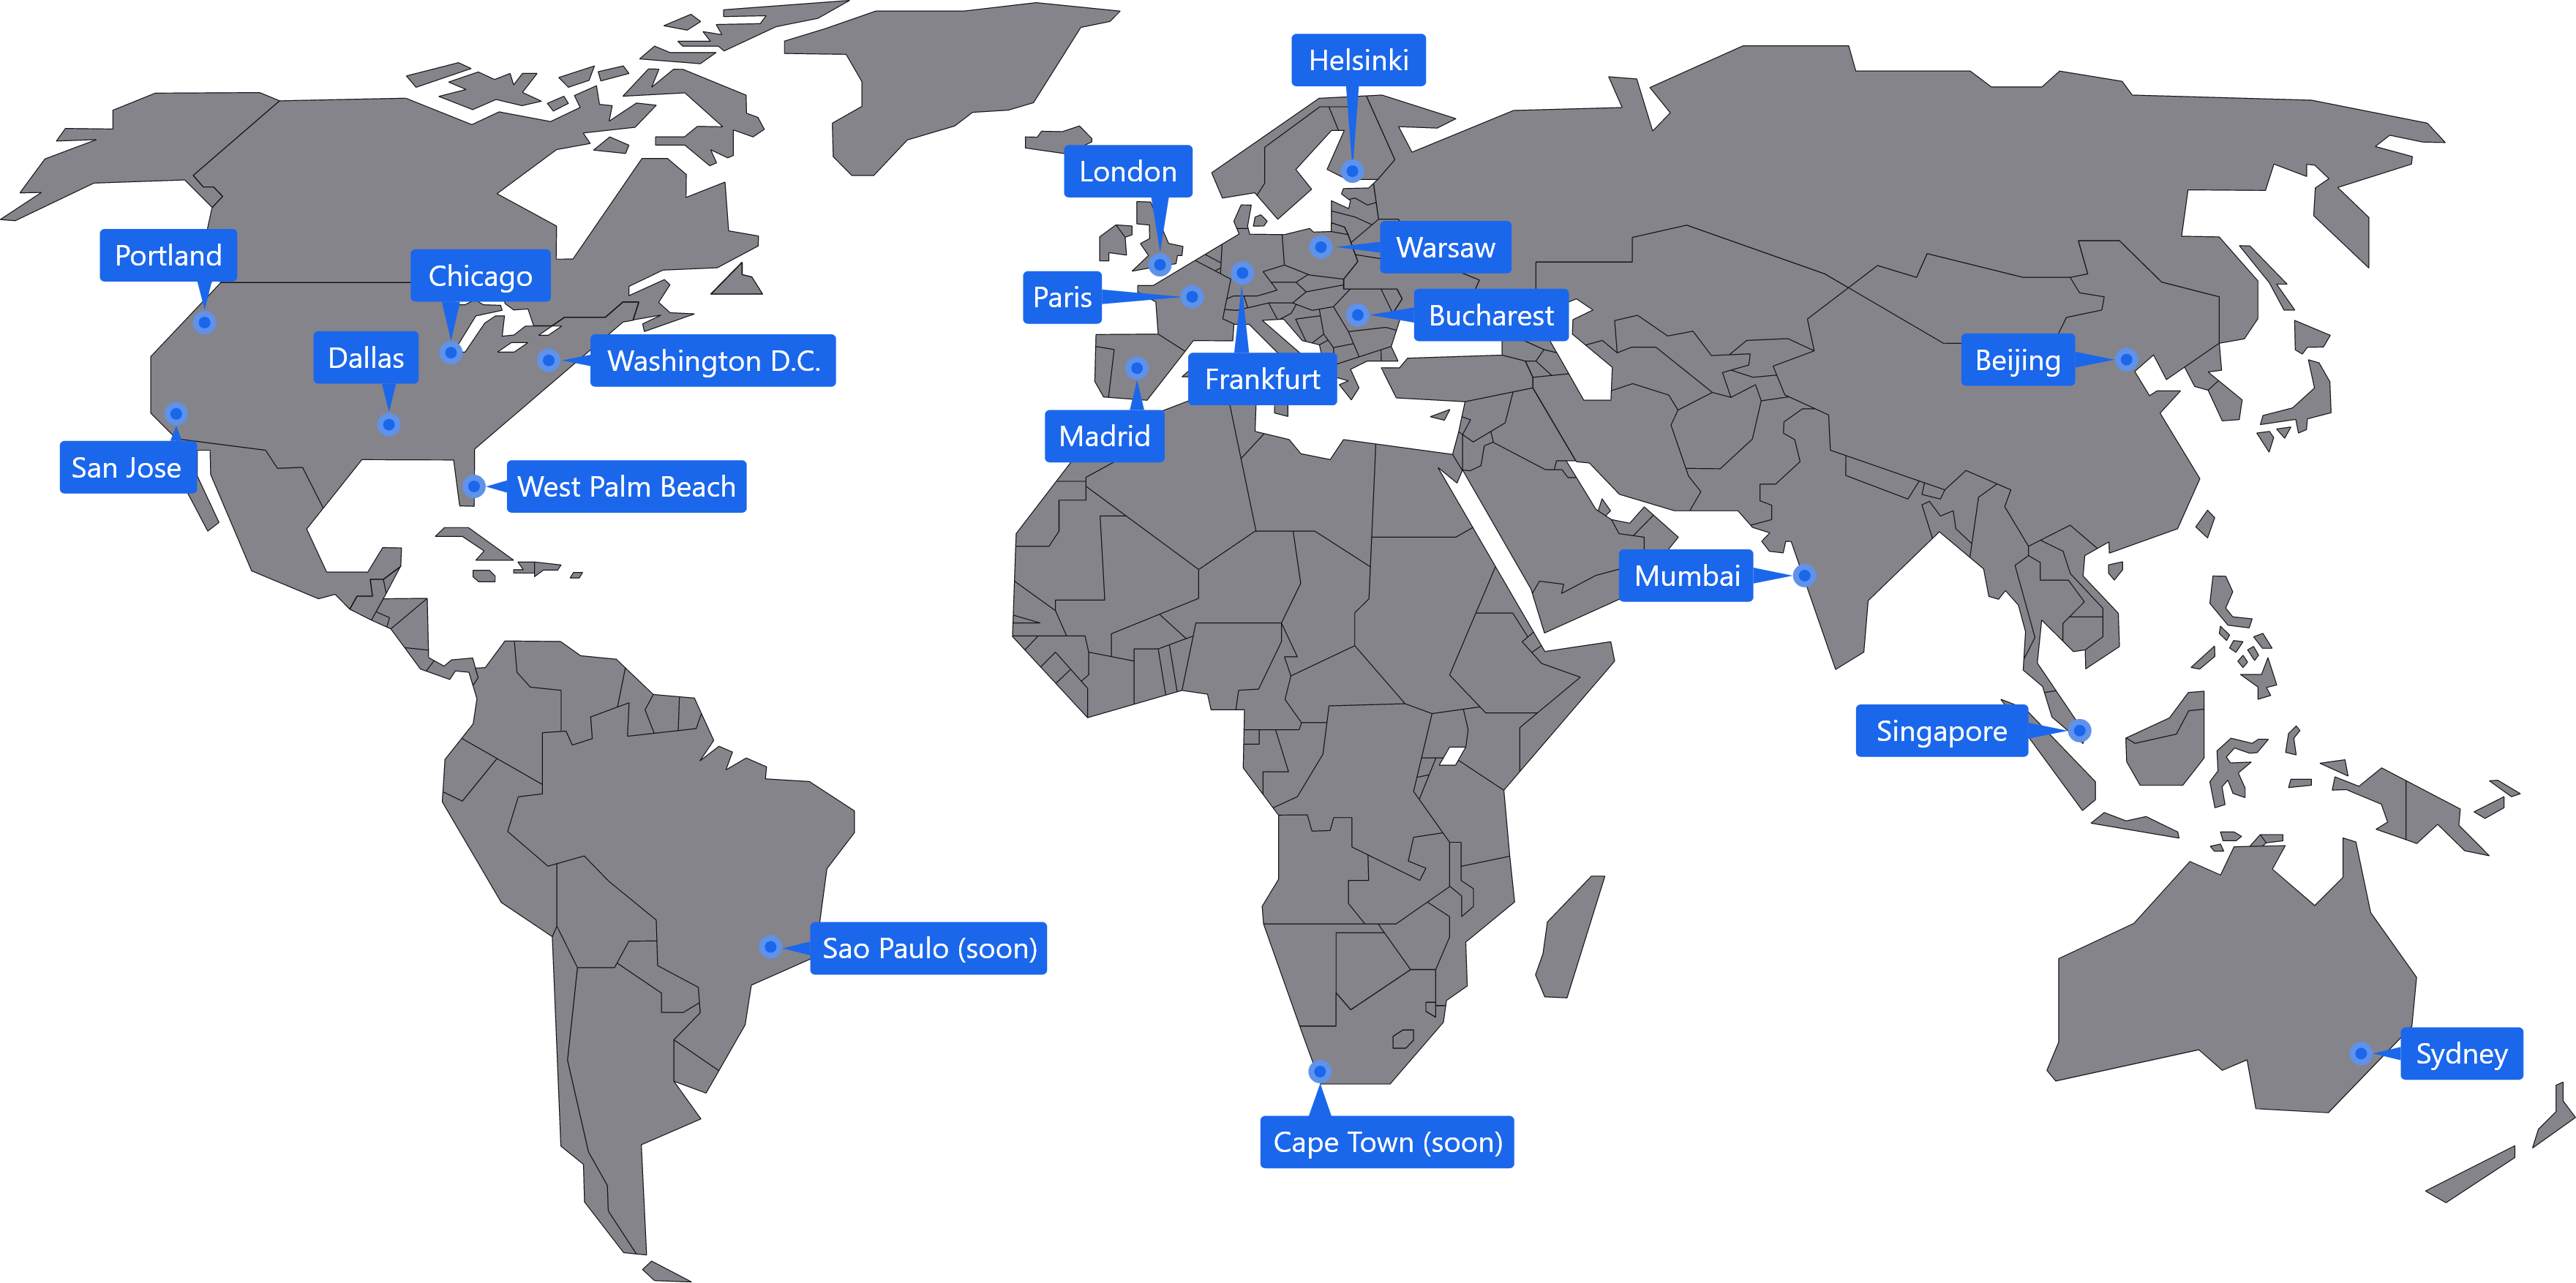 Mapa mundial con la ubicación de los servidores